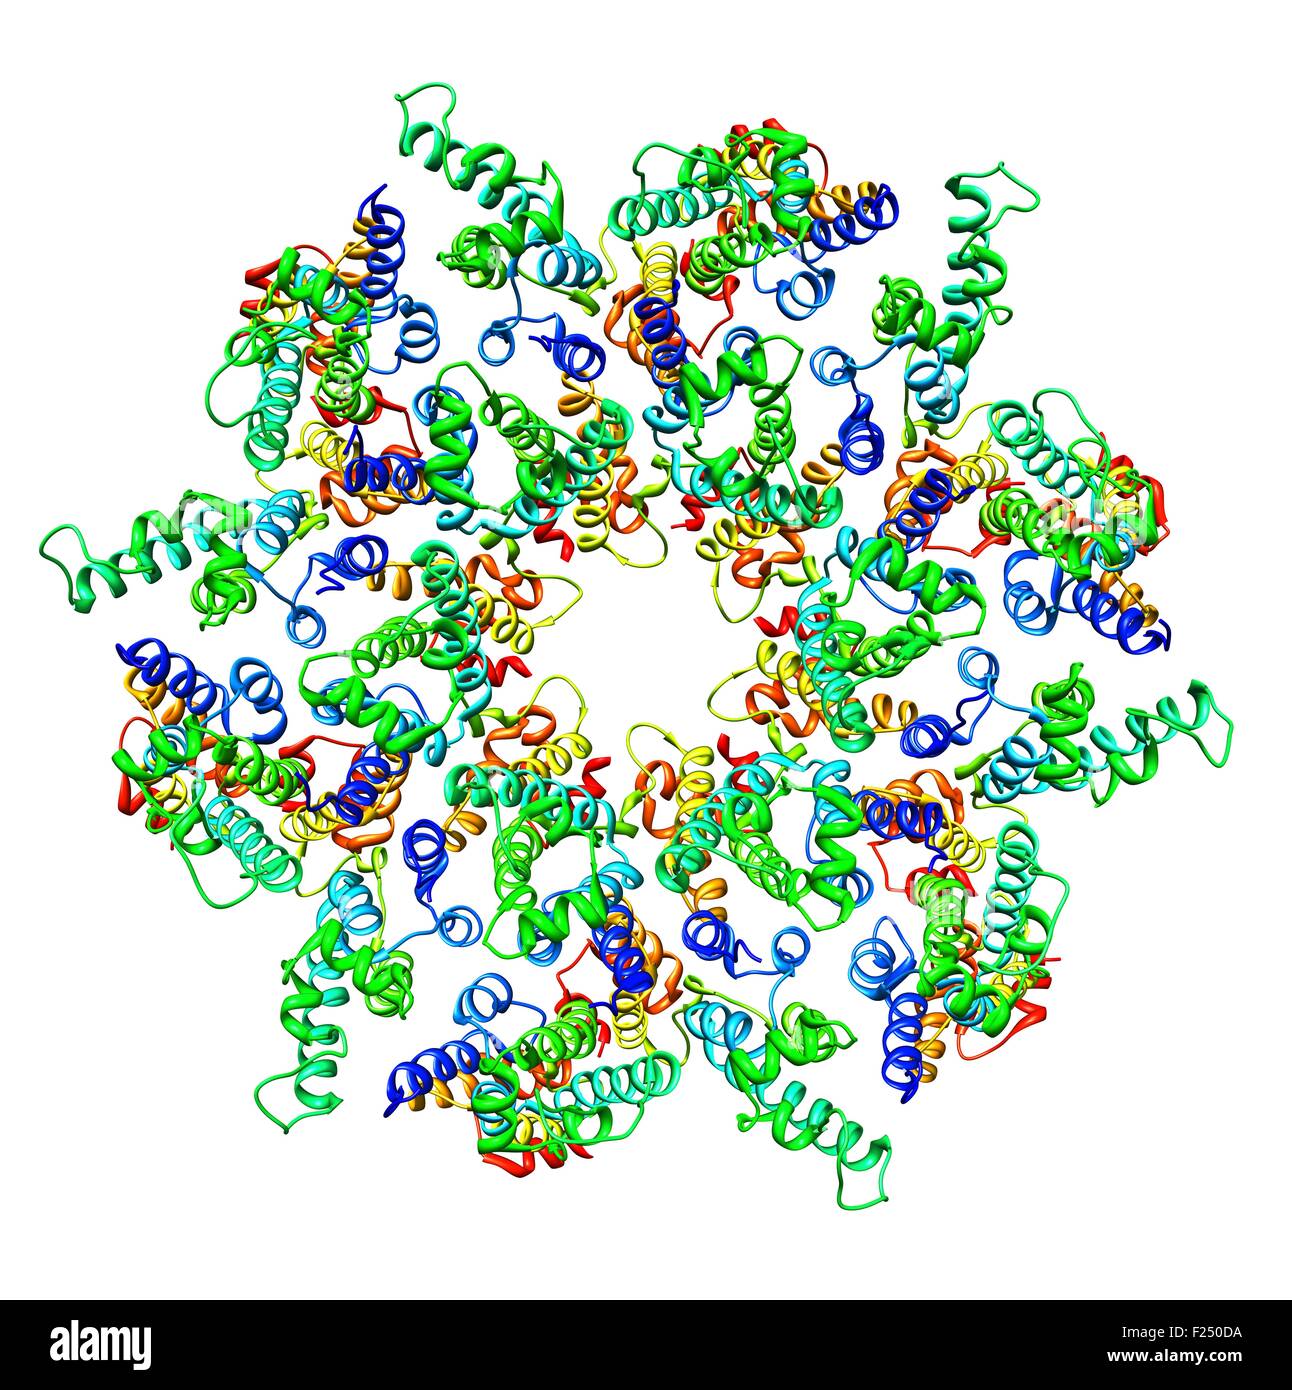 Vista frontale di una rappresentazione molecolare di un immaturo del virus da immunodeficienza umana di tipo 1 (HIV-1) nel capside un intatto di particelle di virus. Poliproteina assembla in una proteina esamerica traliccio alla membrana di plasma della cellula infettata, indurre germogliando e rilascio di una particella immaturi.portando a riarrangiamento interno del virus nella coppia, forma infettiva. Foto Stock